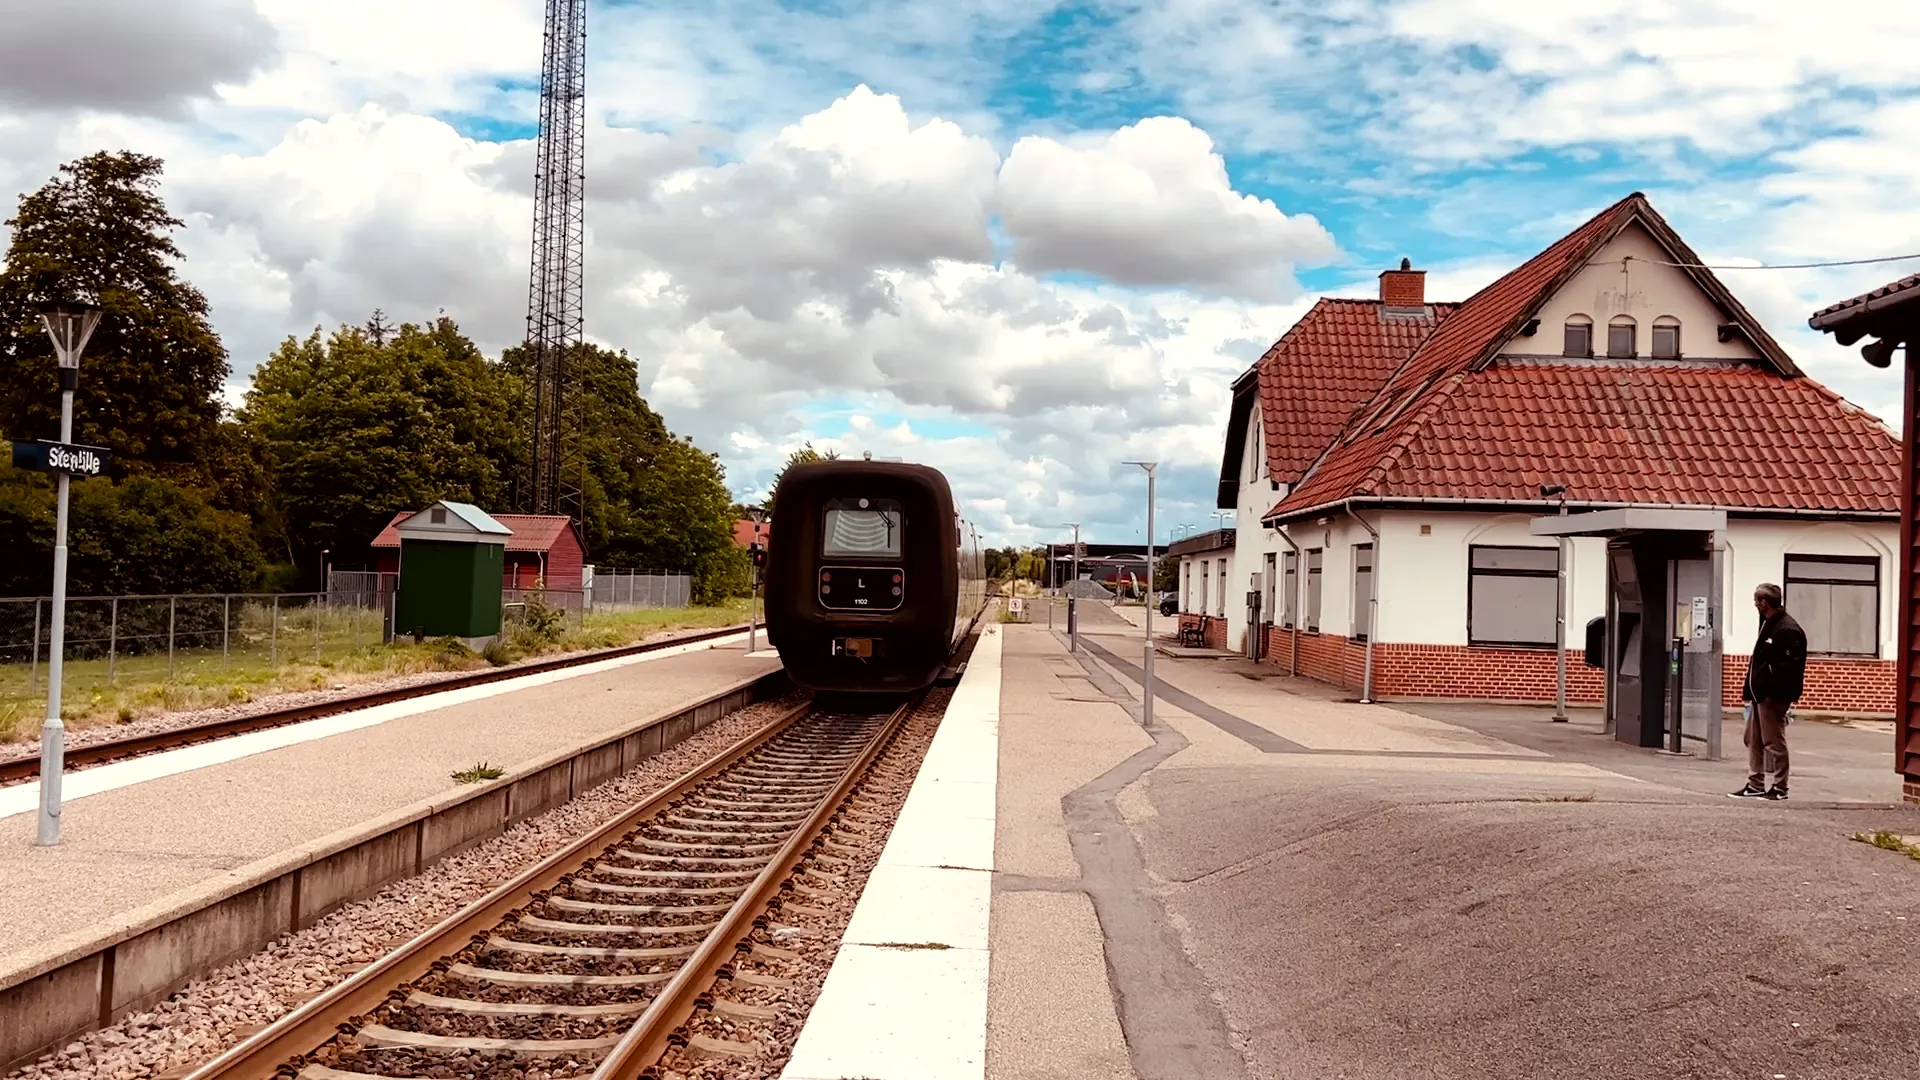 Billede af tog ud for Stenlille Station.